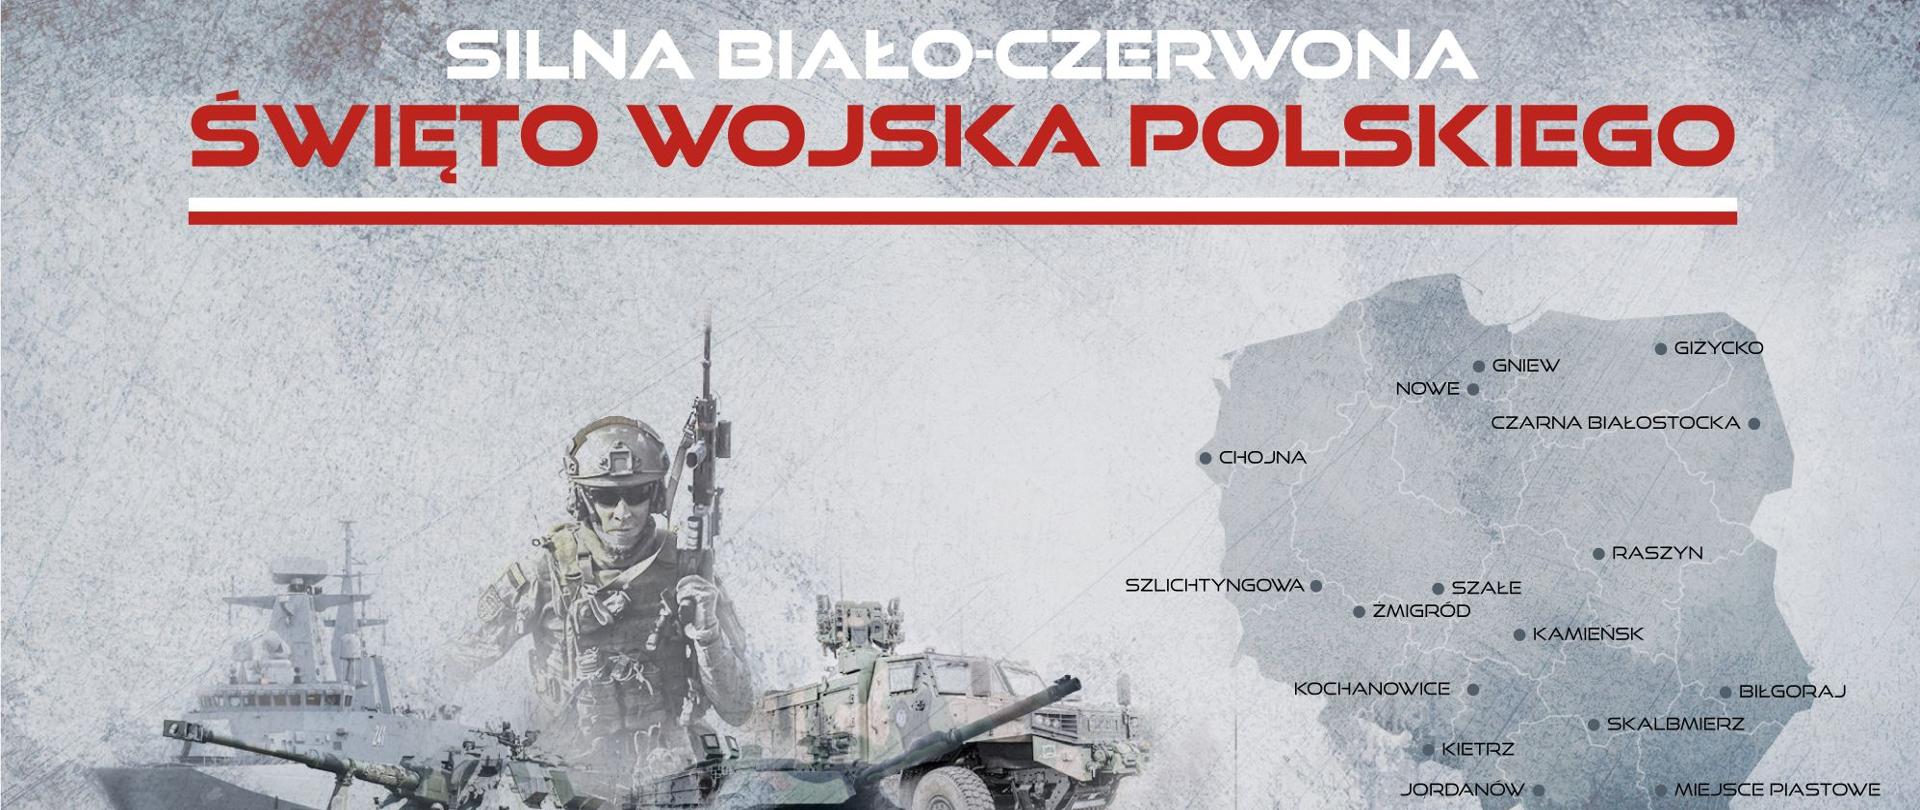 Infografika dot. święta wojska polskiego, pojazdy wojskowe, mapa polski z zaznaczonymi miejscowościami, w których odbędą się wojskowe pikniki 12 sierpnia, szczegóły na www.mon.gov.pl